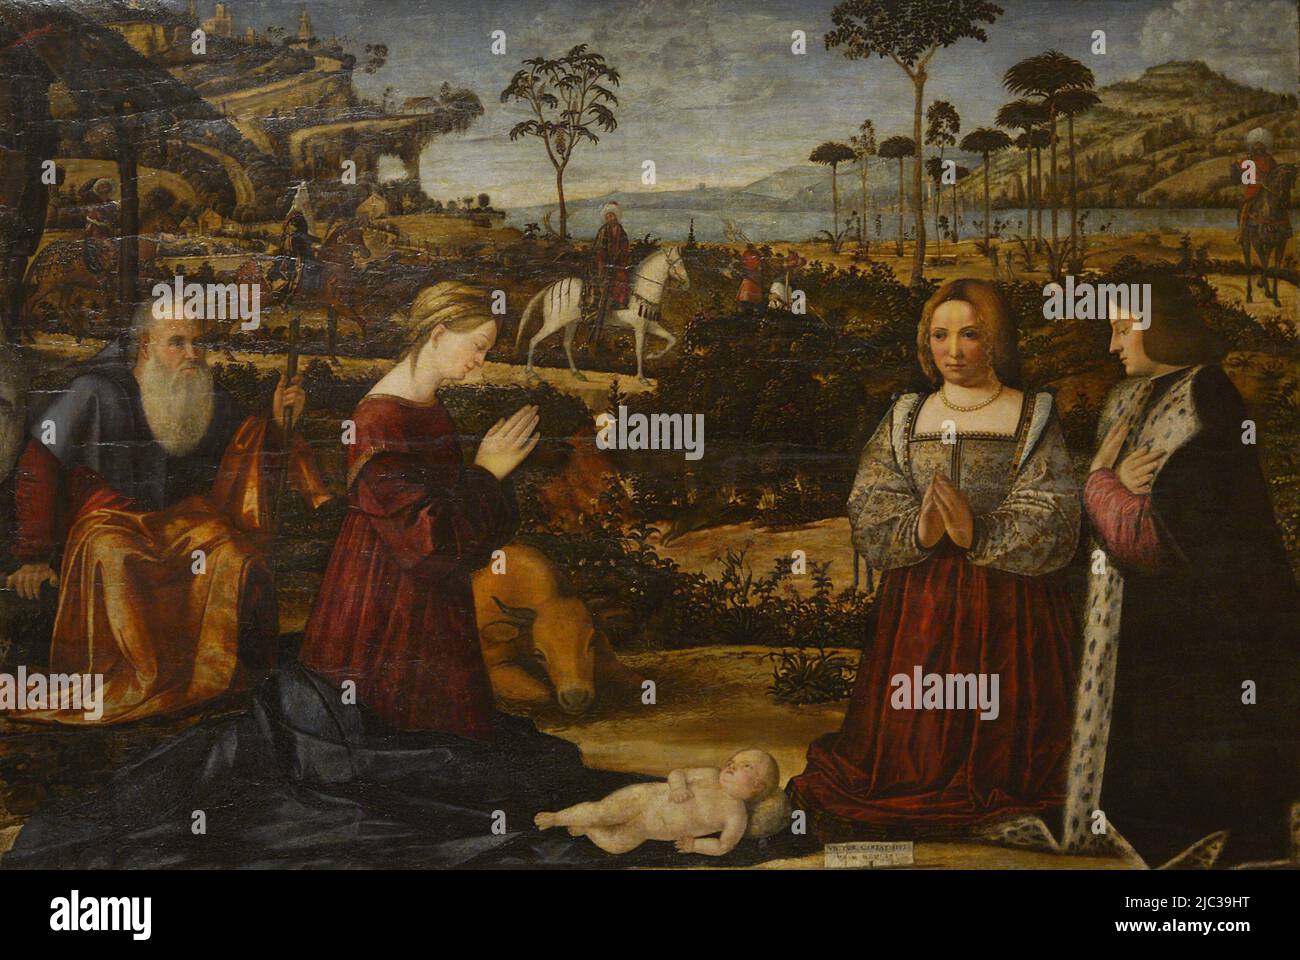 Carpaccio de Vittore (ca.1460-1525/1526). Peintre italien. Sainte famille avec les donateurs, 1505. Tempera et huile (?) sur bois. Musée Calouste Gulbenkian. Lisbonne, Portugal. Banque D'Images